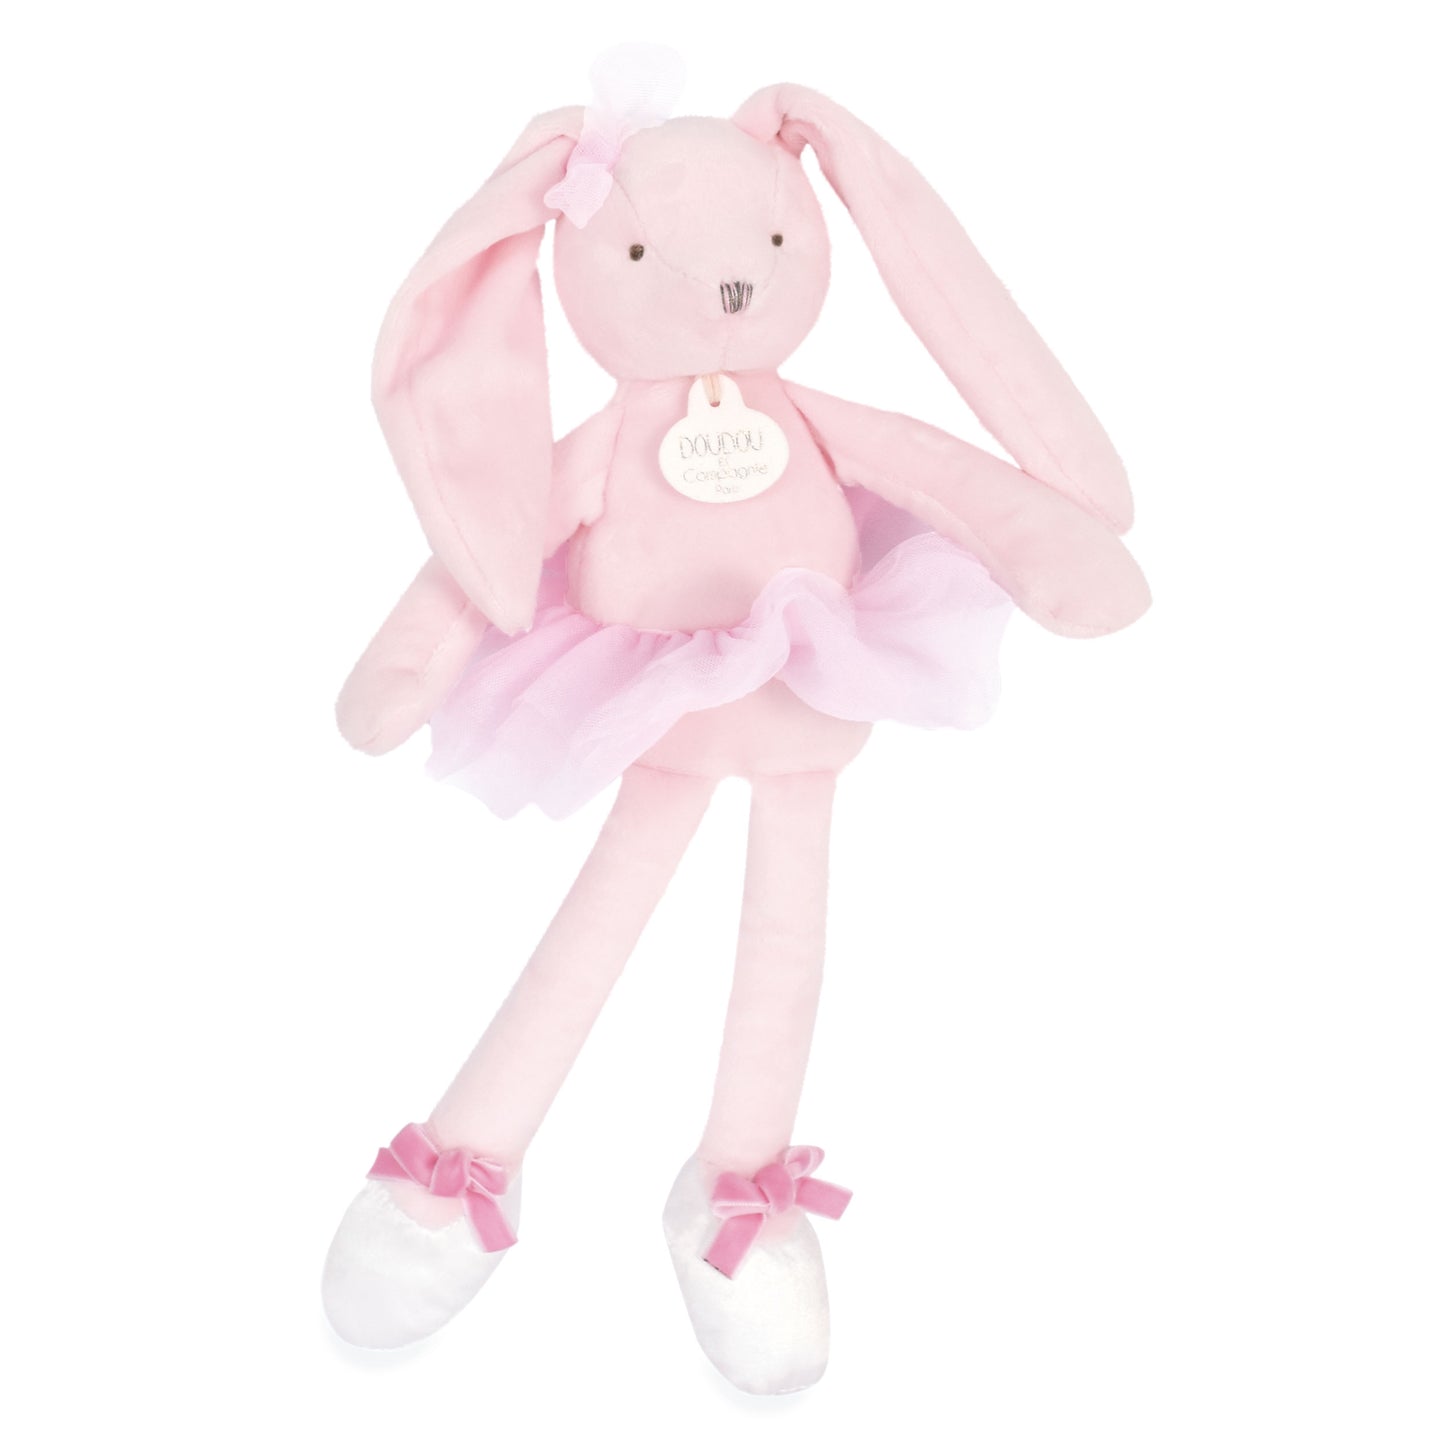 My Doudou Ballerina Bunny 30 Cm